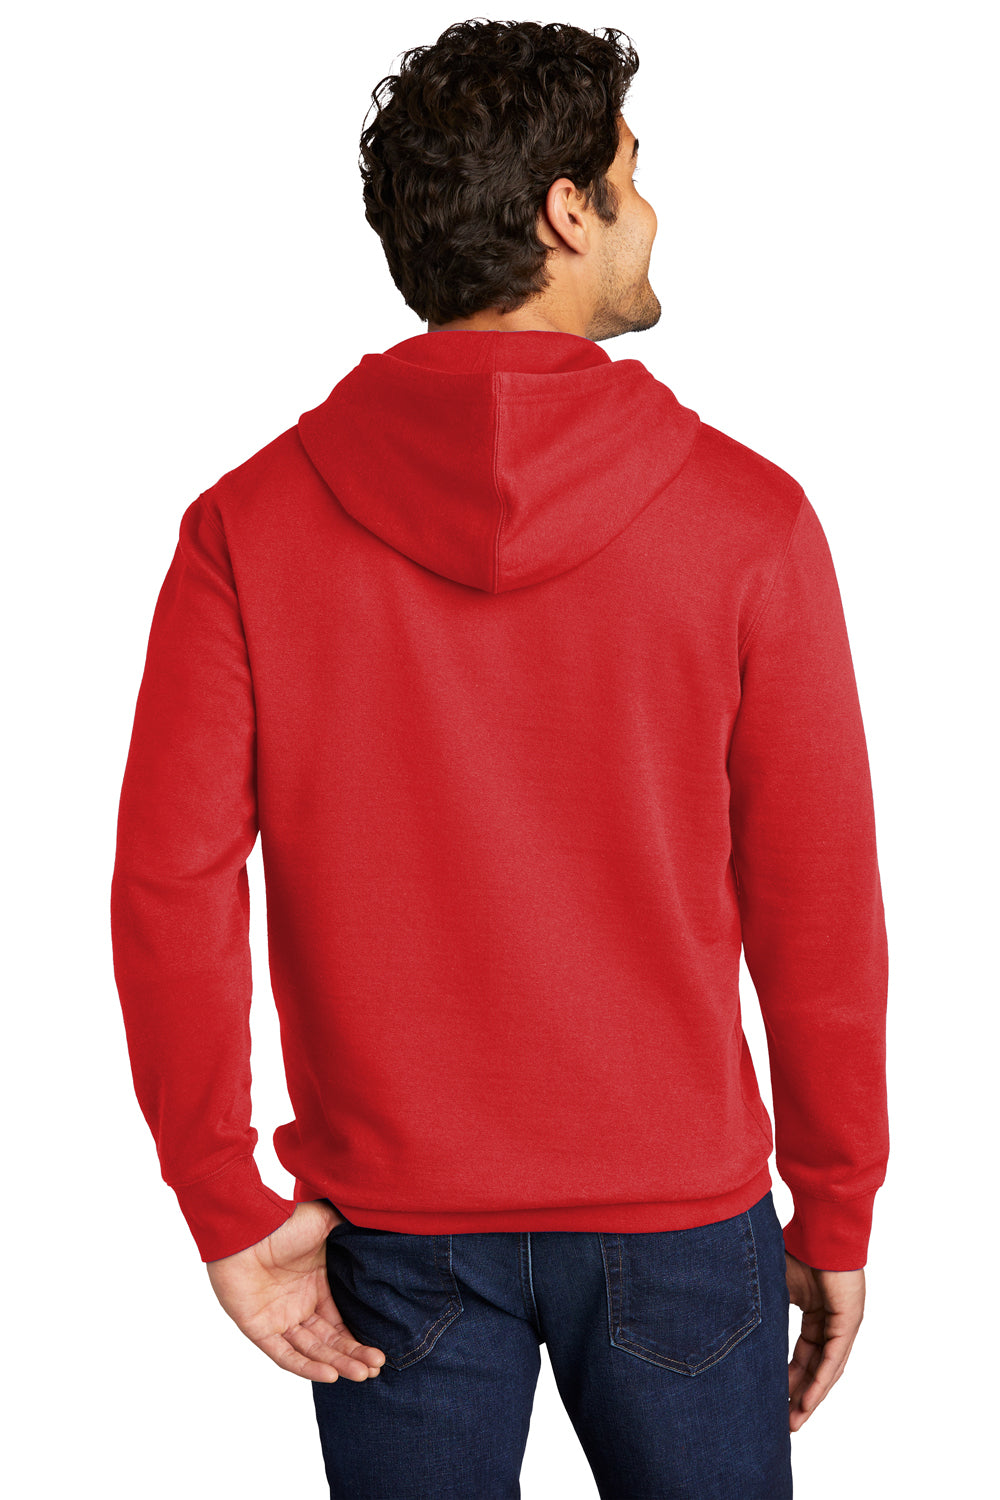 District DT6100 Mens Very Important Fleece Hooded Sweatshirt Hoodie Fiery Red Back